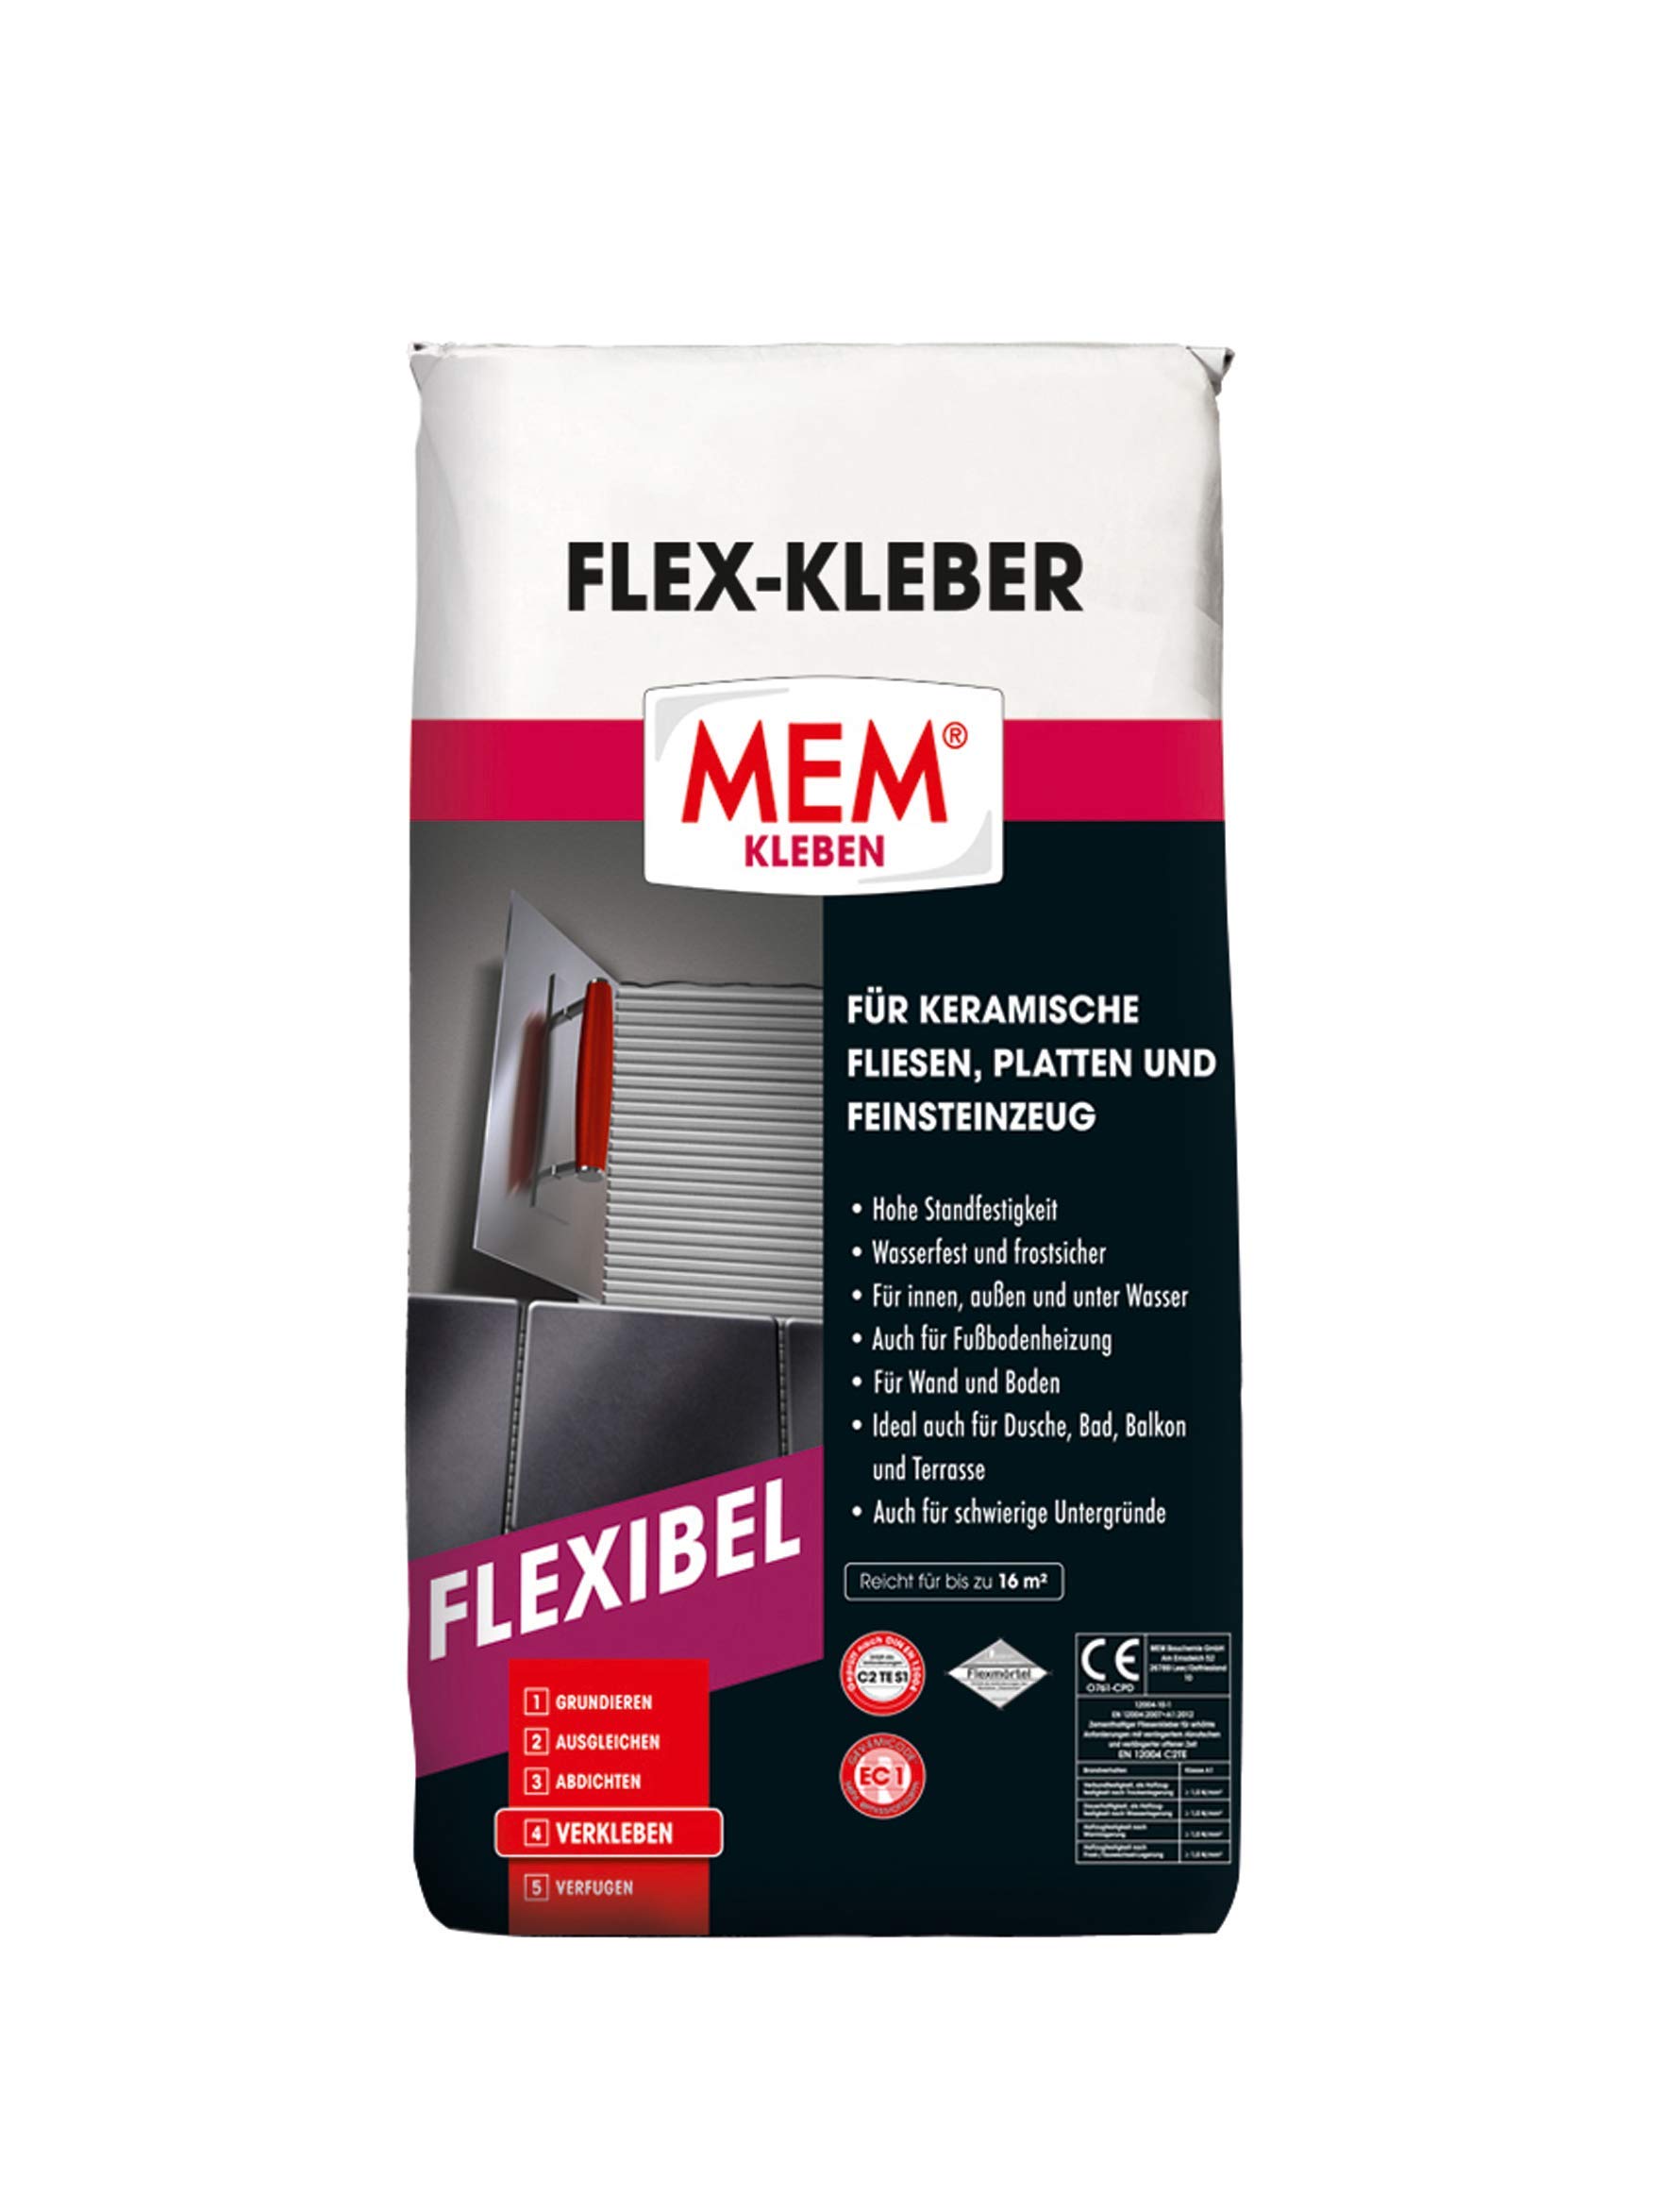 MEM Flex-Kleber - 25 KG - Ein flexibler Dünnbettmörtel - Dauernass - Frostbeständig und von hoher Verformbarkeit - Für Untergründe aus Beton, Zement-, Kalk- und Gipsputz - 30822618